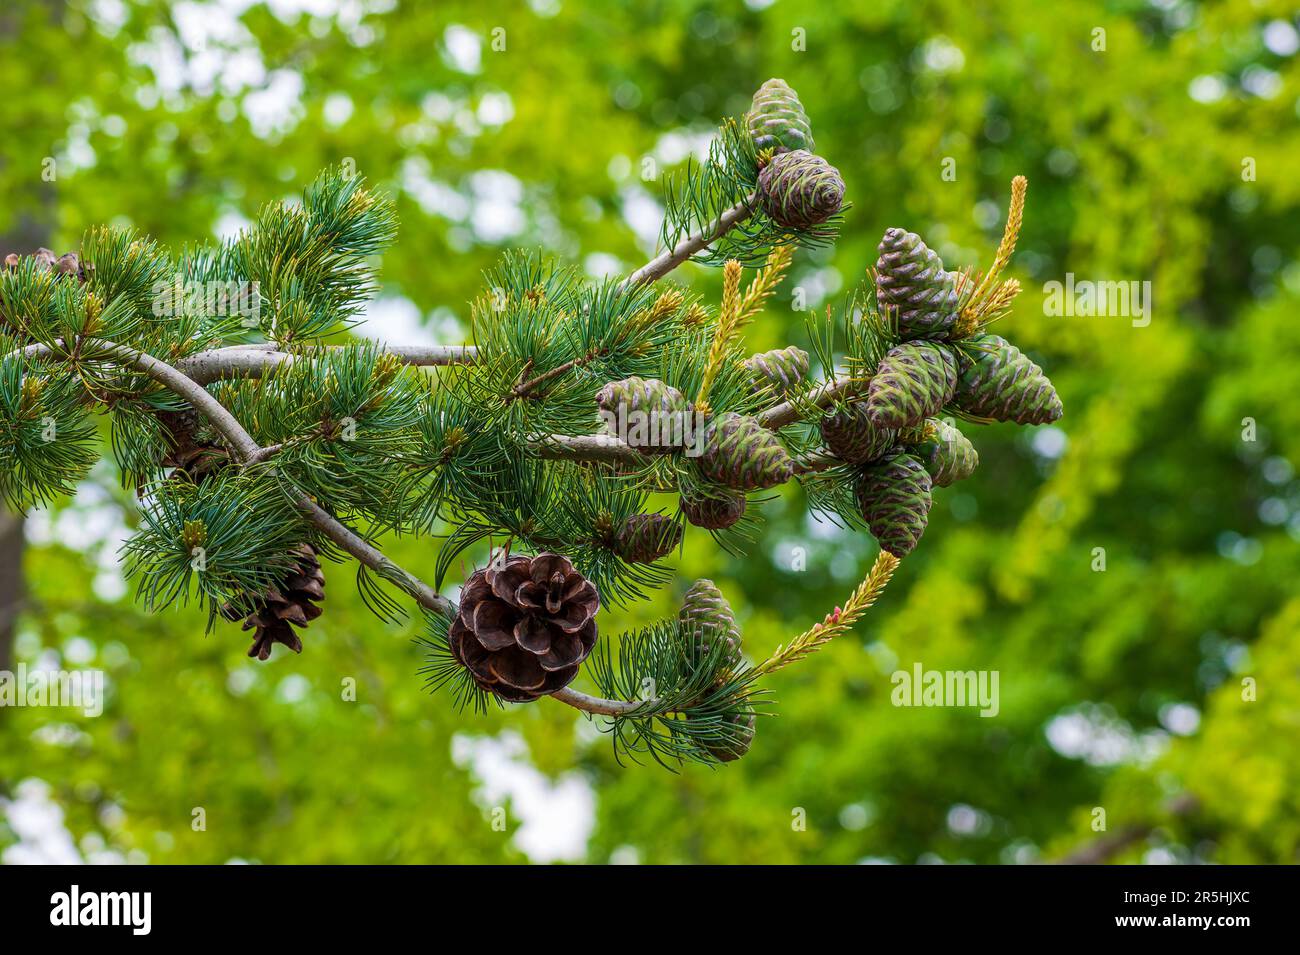 Pin japonais – gros plan d’une branche avec des cônes en développement et matures. Jardin botanique de la Nouvelle-Angleterre à Tower Hill, Boylston, Massachusetts Banque D'Images